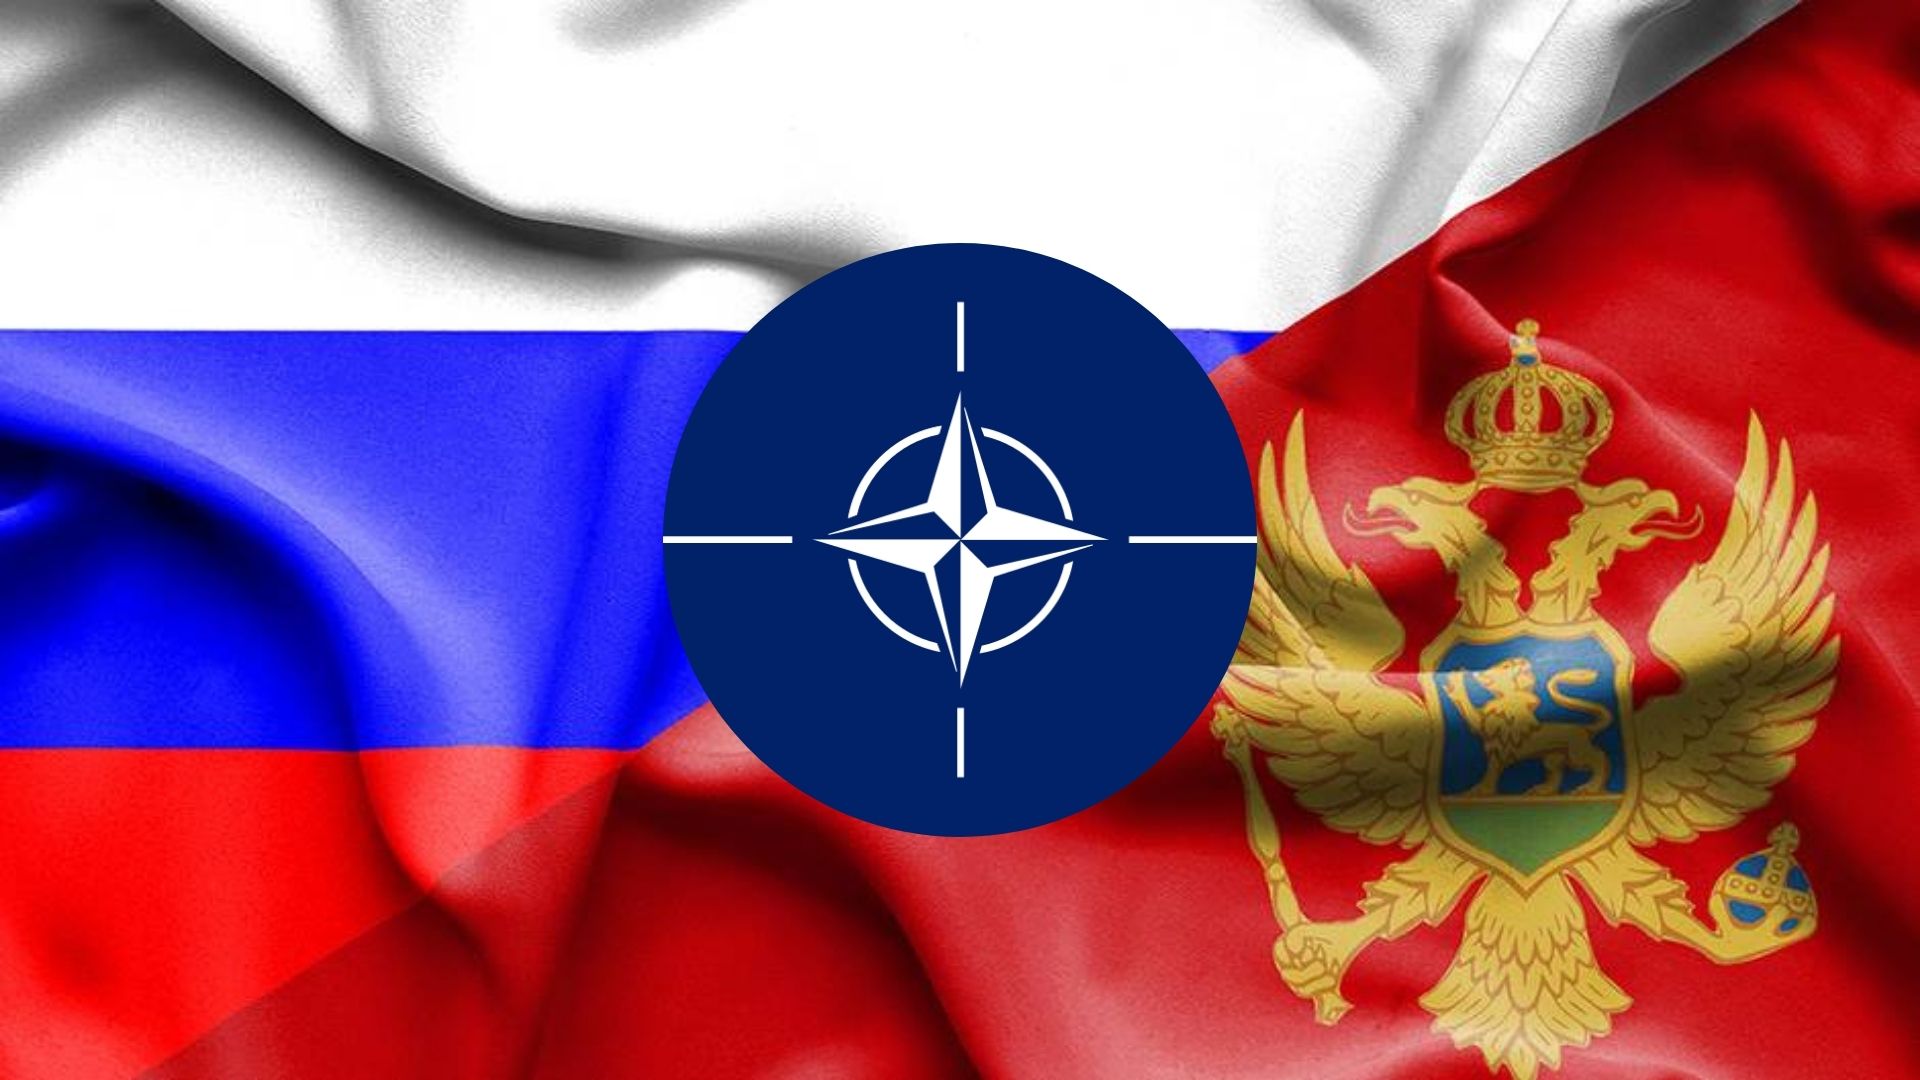 RUSKI MINISTAR SERGEJ LAVROV: Crnu Goru su bukvalno uvukli u NATO uprkos stavu većine